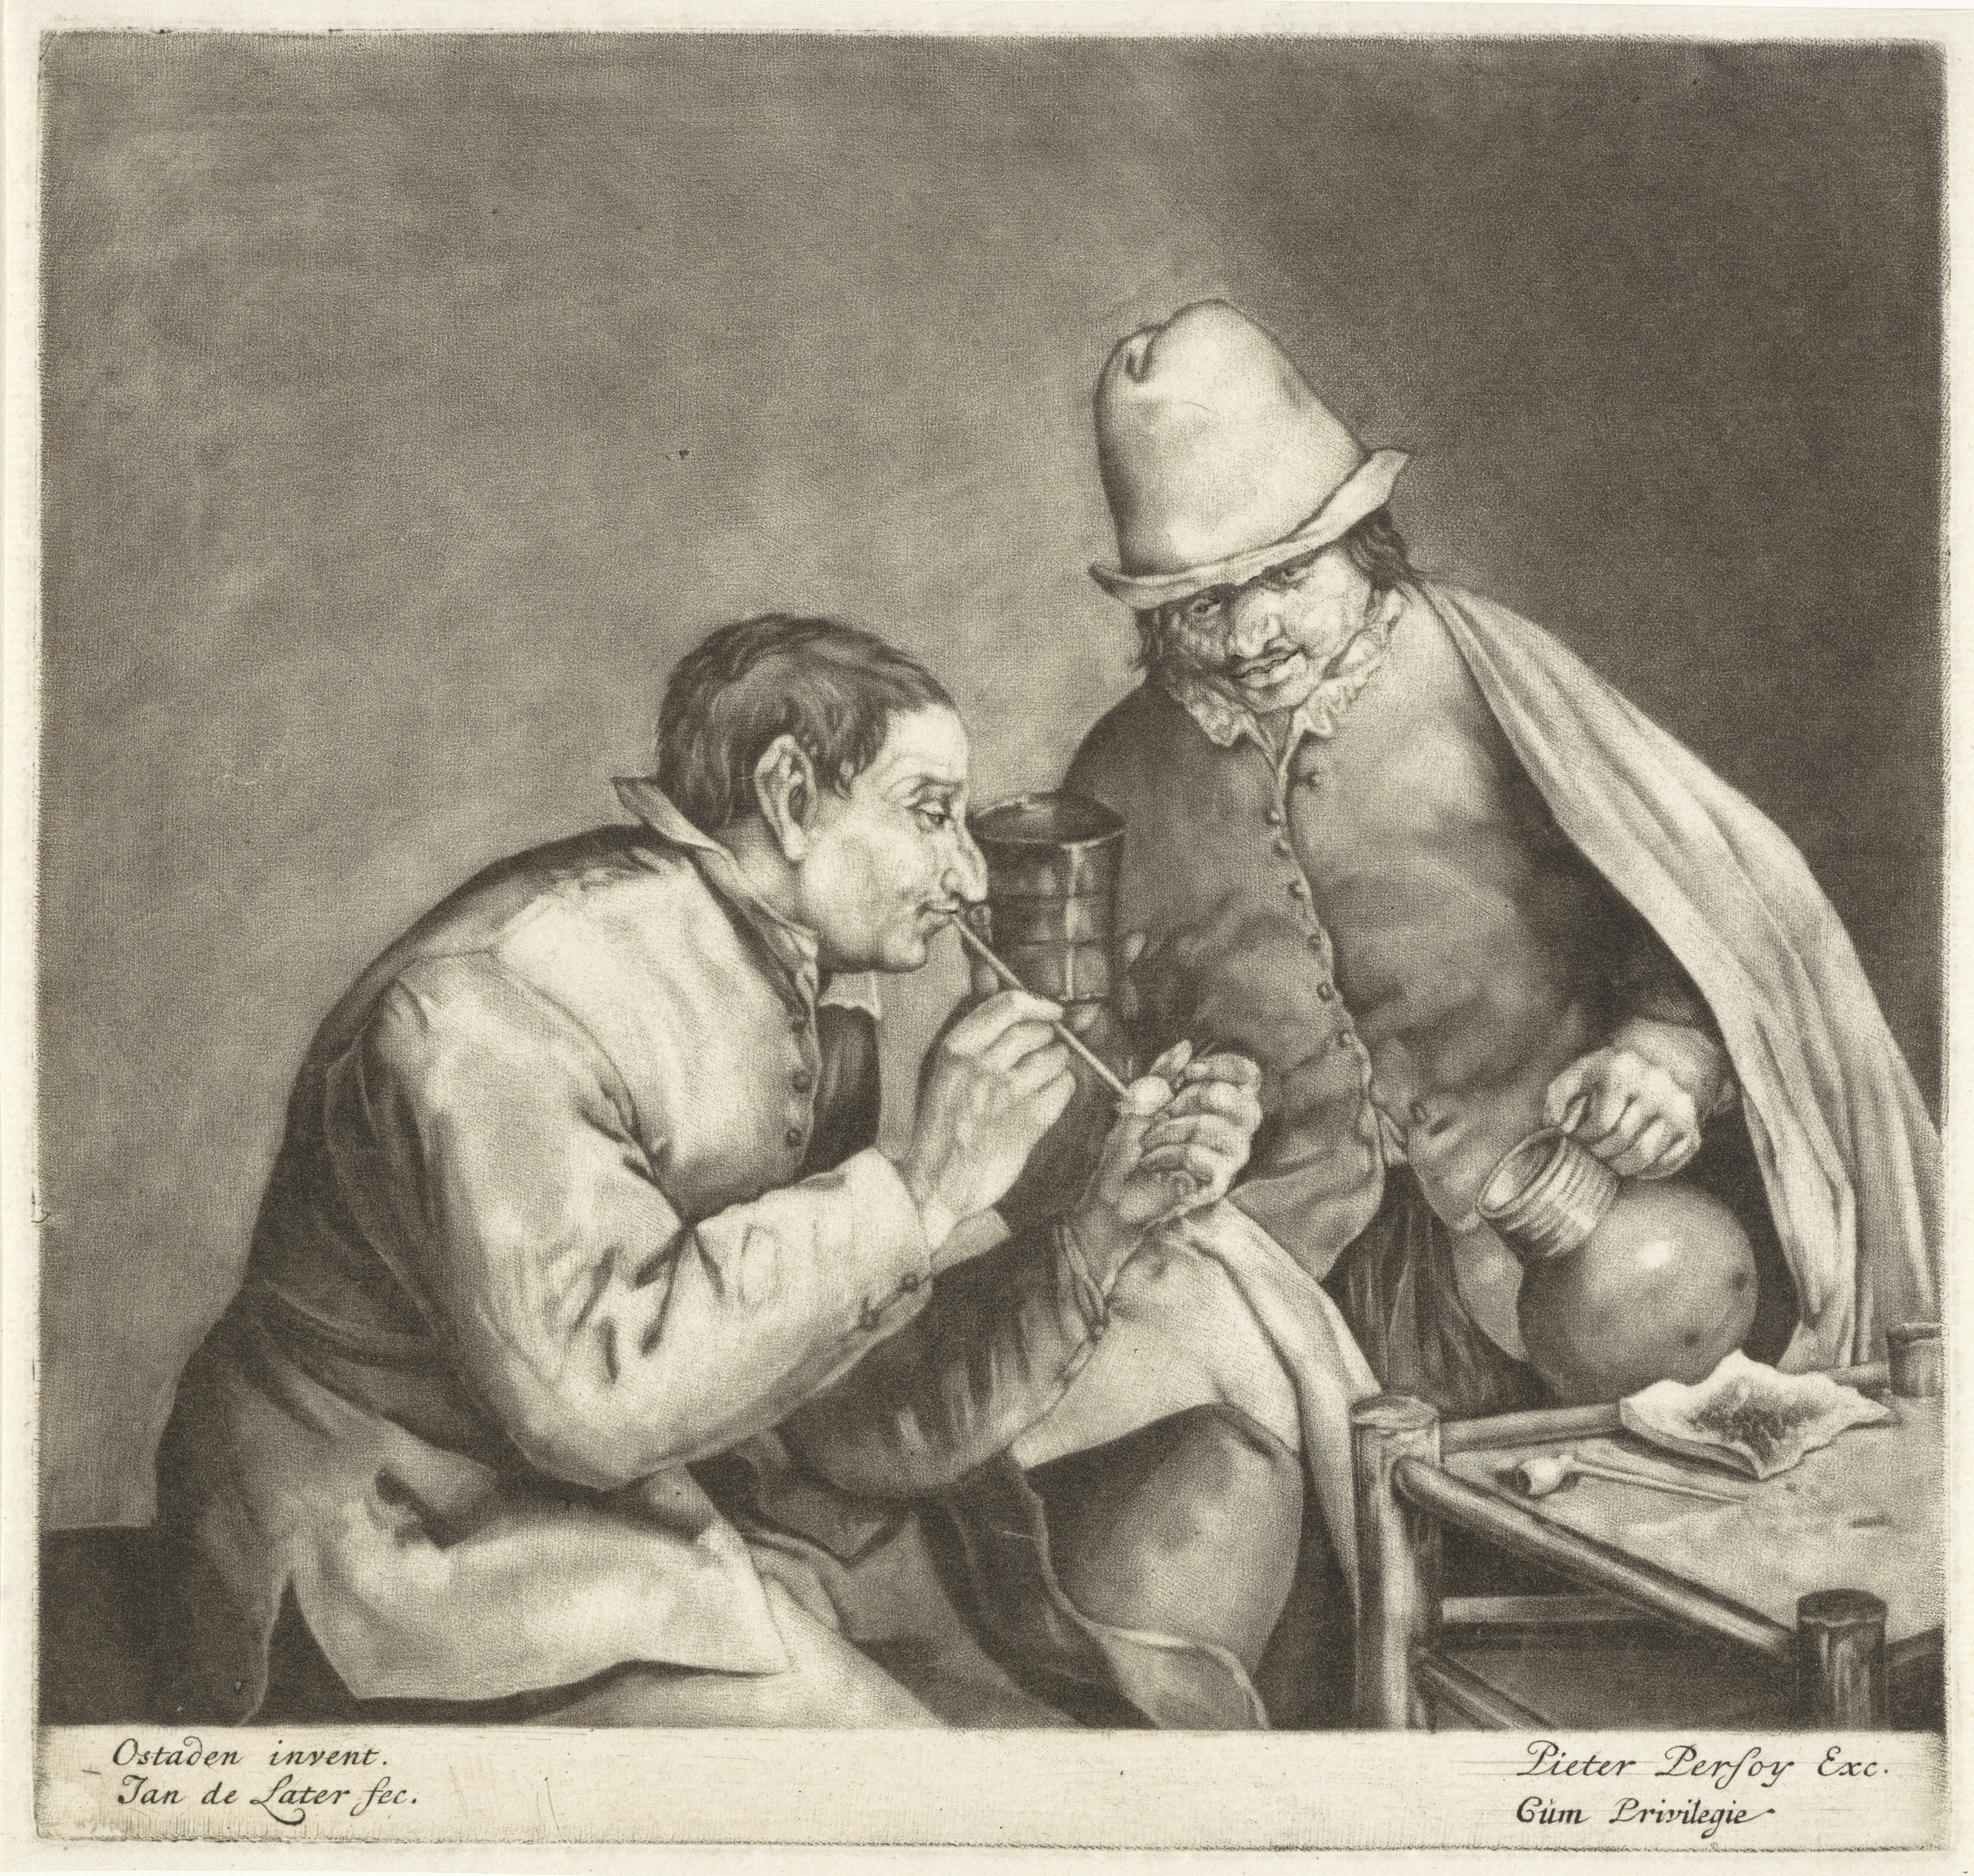 Roker en drinker, Jan de Later, after Adriaen van Ostade, 1680-1694